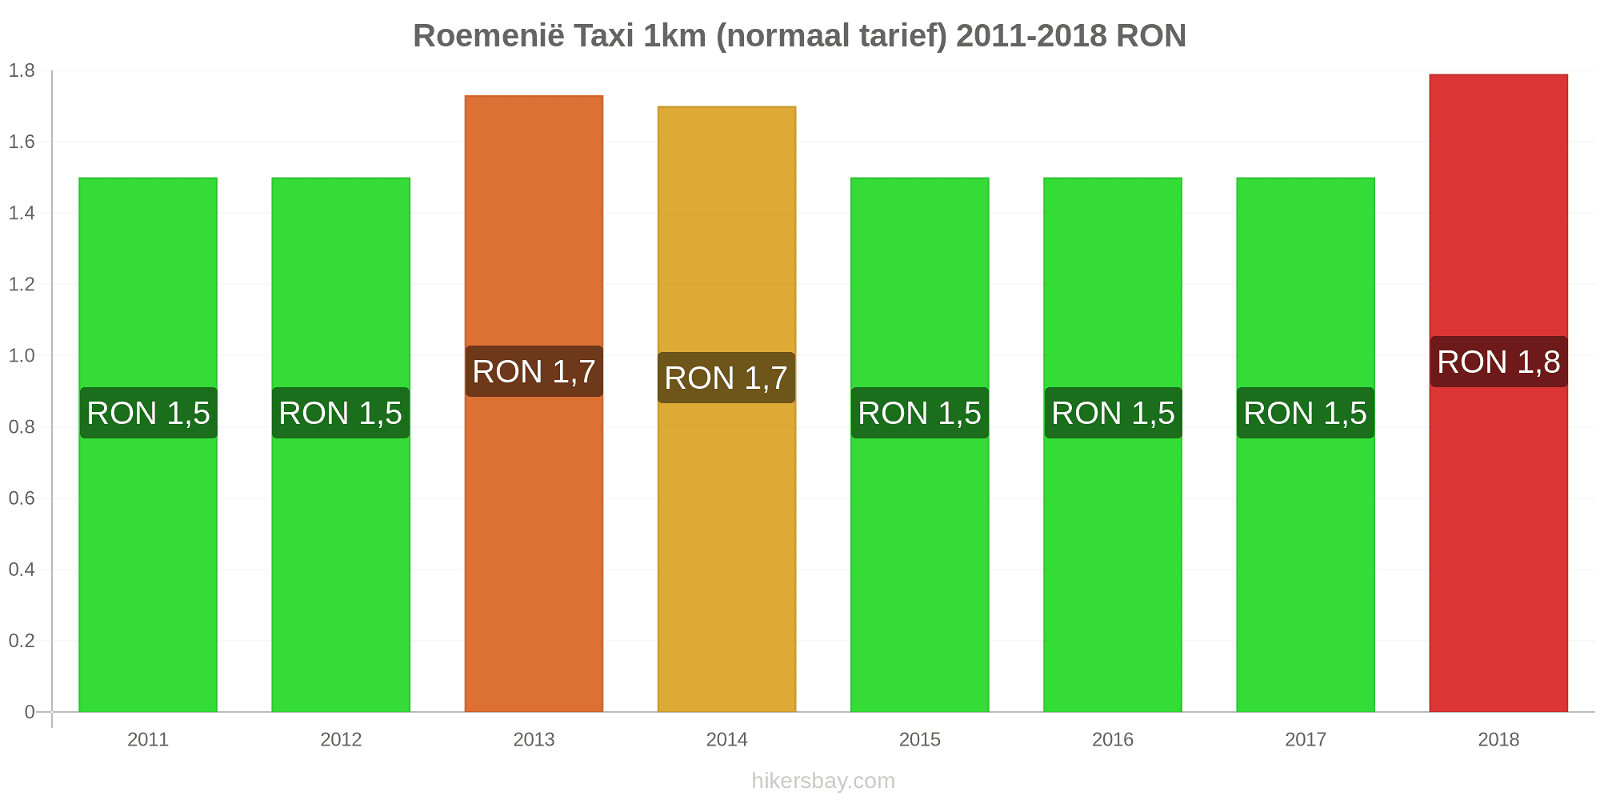 Roemenië prijswijzigingen Taxi 1km (normaal tarief) hikersbay.com